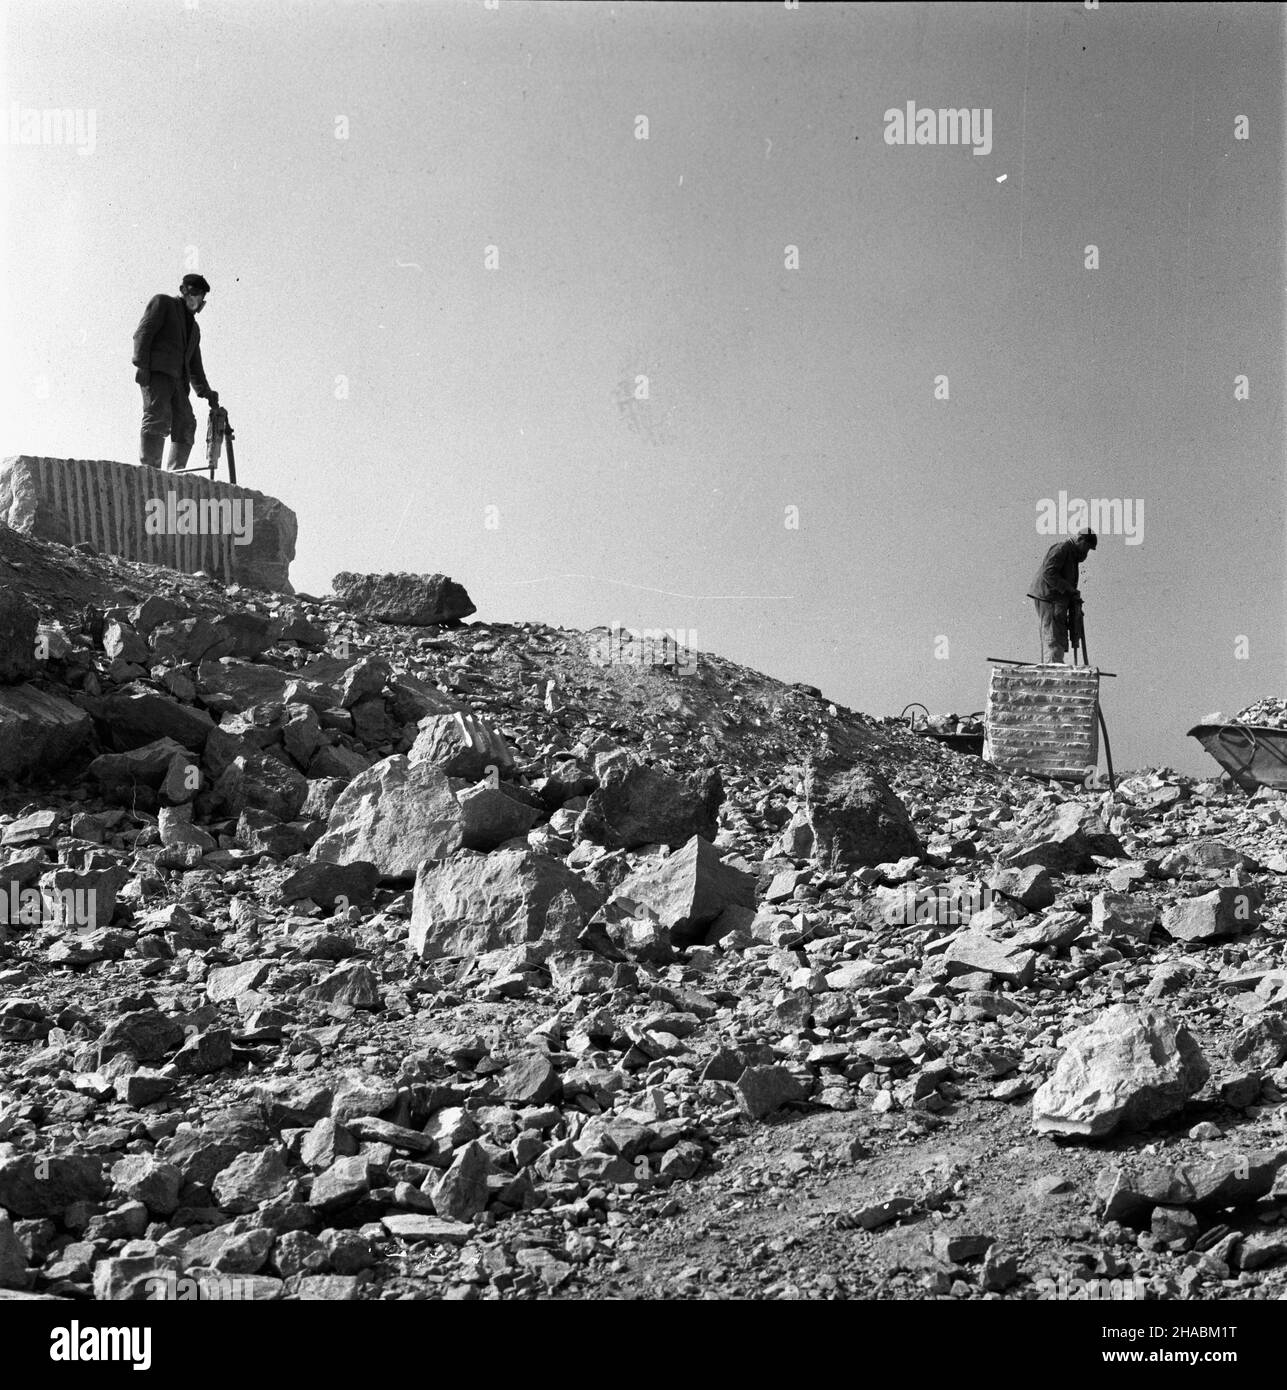 Bolechowice, 1969-11. Proces pozyskiwania marmuru w kamienio³omie. Nz. górnicy rozbieraj¹cy bry³y marmuru przy pomocy m³otów pneumatycznych. uu  PAP/W³odzimierz Wawrzynkiewicz    Dok³adny dzieñ wydarzenia nieustalony.      Bolechowice, November 1969. Marble excavating from the quarry. Pictured: quarry workers breaking marble blocks with jackhammers.  uu  PAP/Wlodzimierz Wawrzynkiewicz Stock Photo